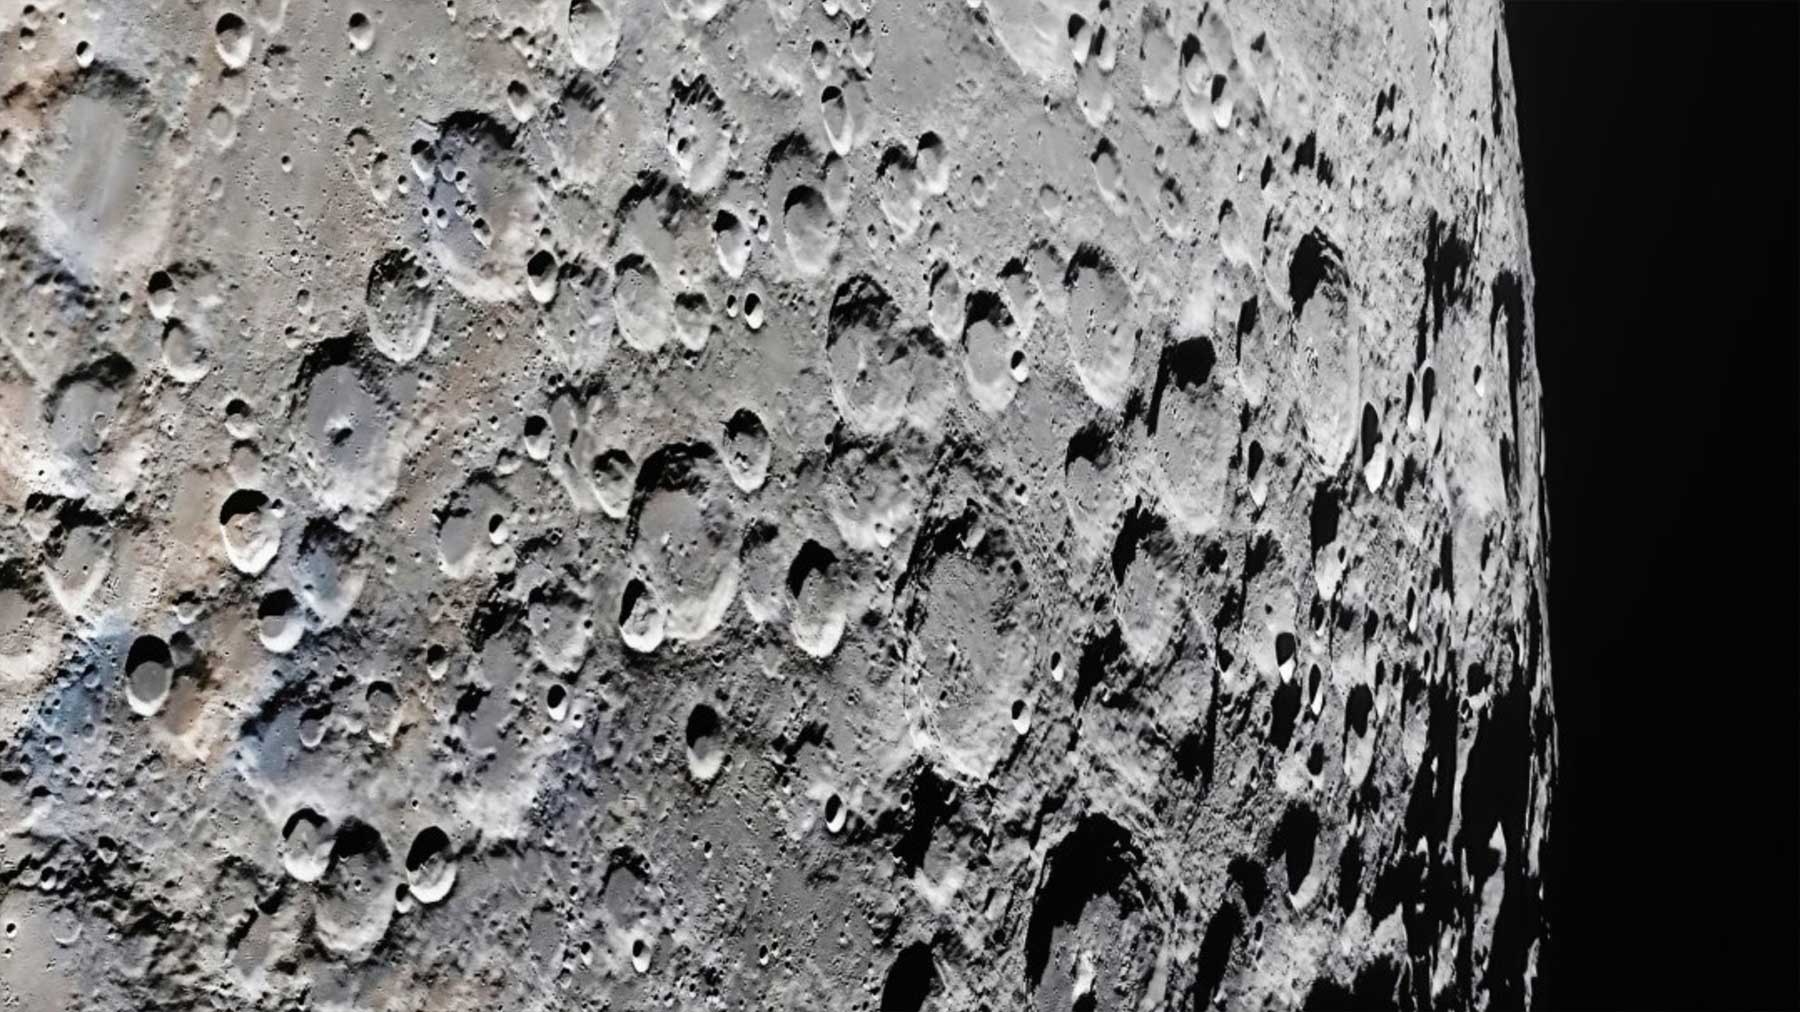 1,3 Gigapixel: Das größte & detailreichste Bild vom Mond? 1329-megapixel-bild-des-monds-supernah-supergross 